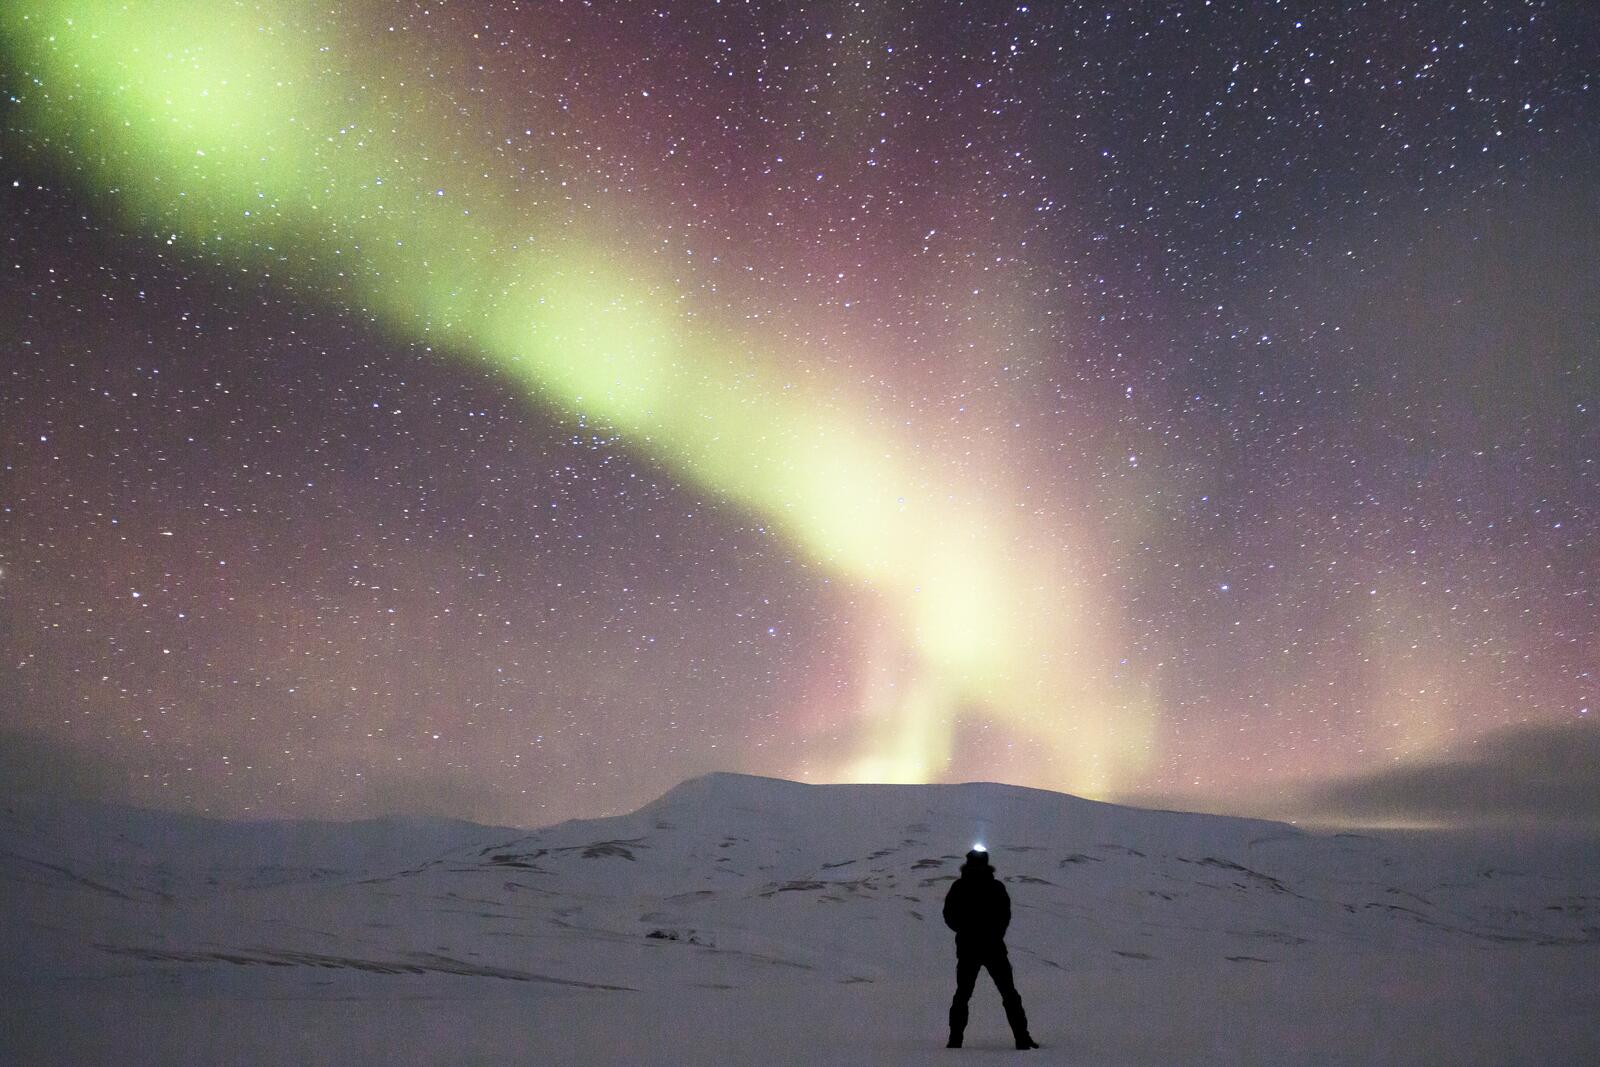 Бесплатное фото Мужчина стоит и смотрит на небо с северным сиянием